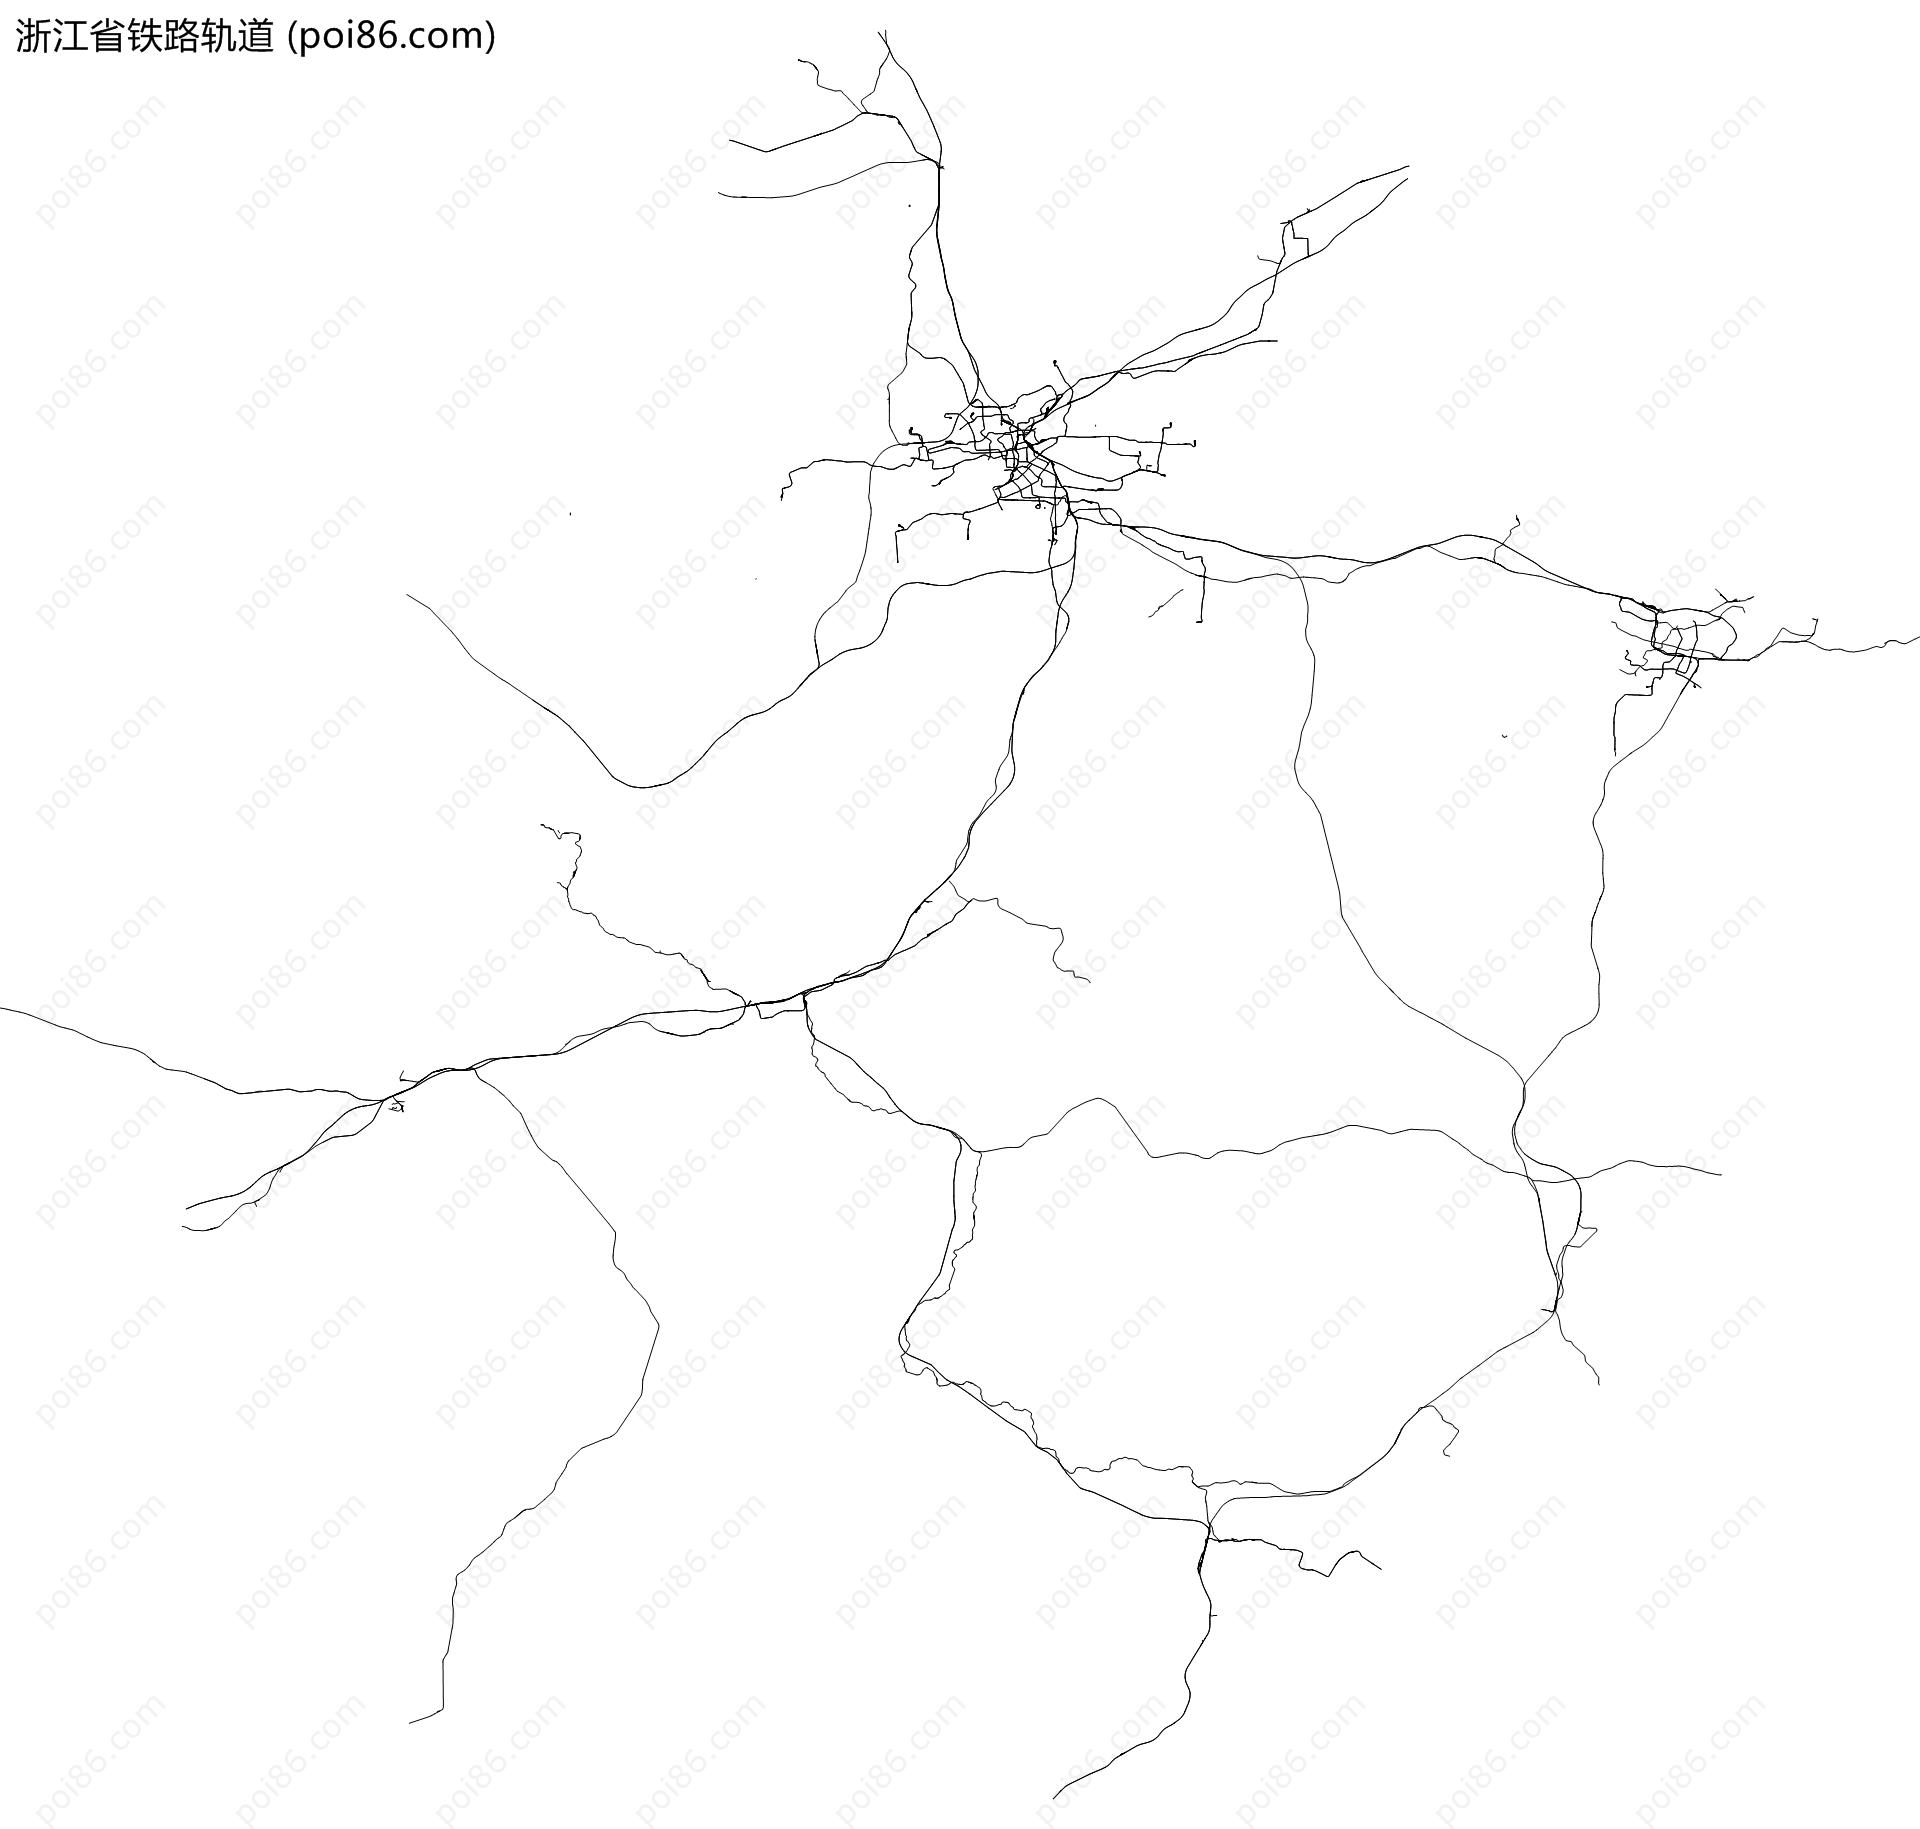 浙江省铁路轨道地图